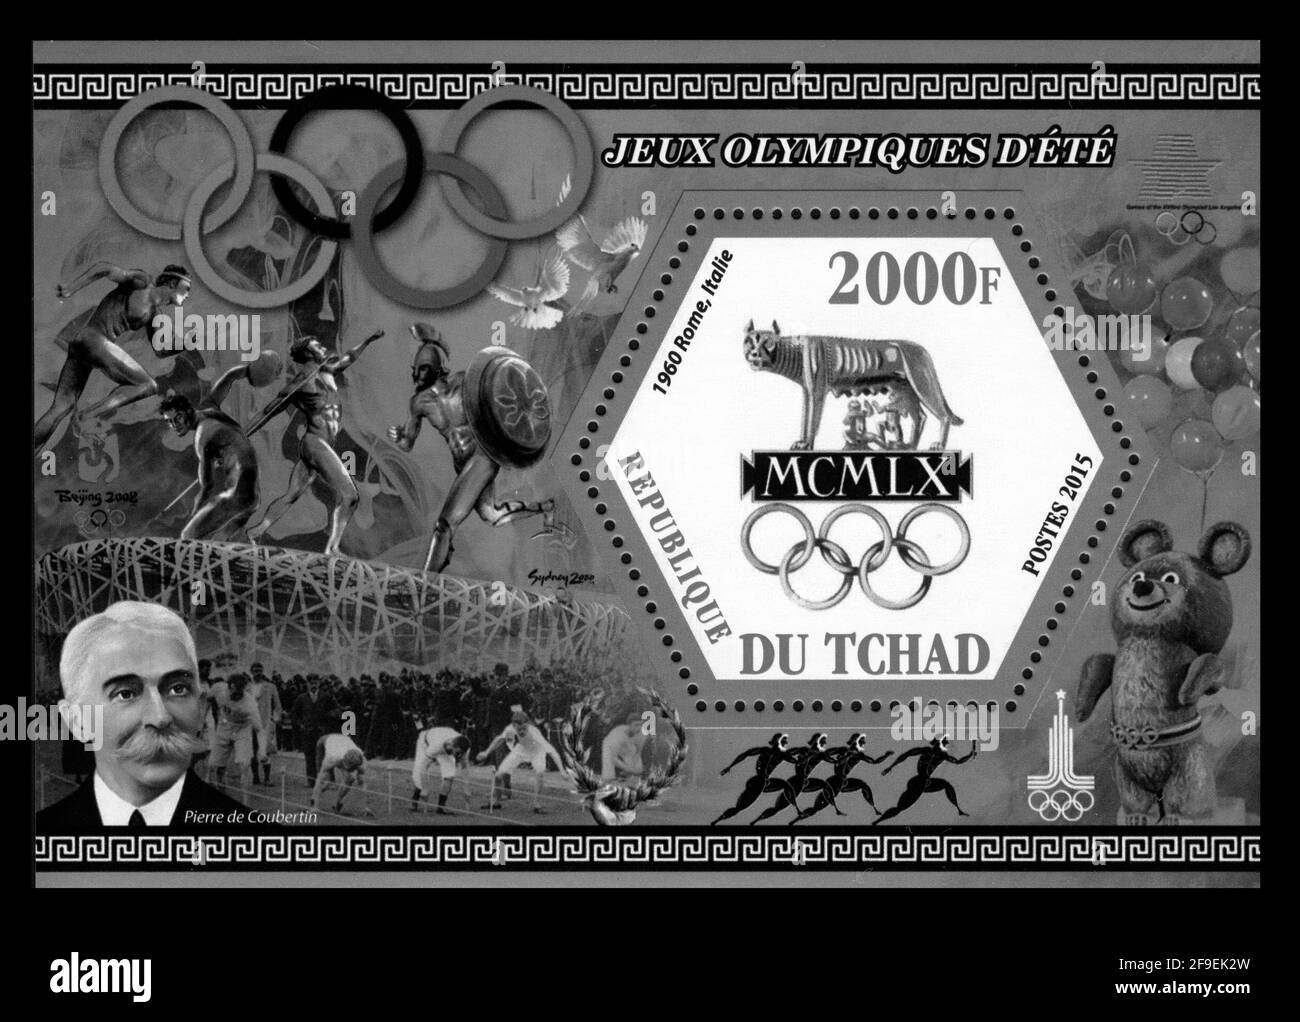 Stampa del timbro in Ciad, simboli degli olimpiadi Foto Stock